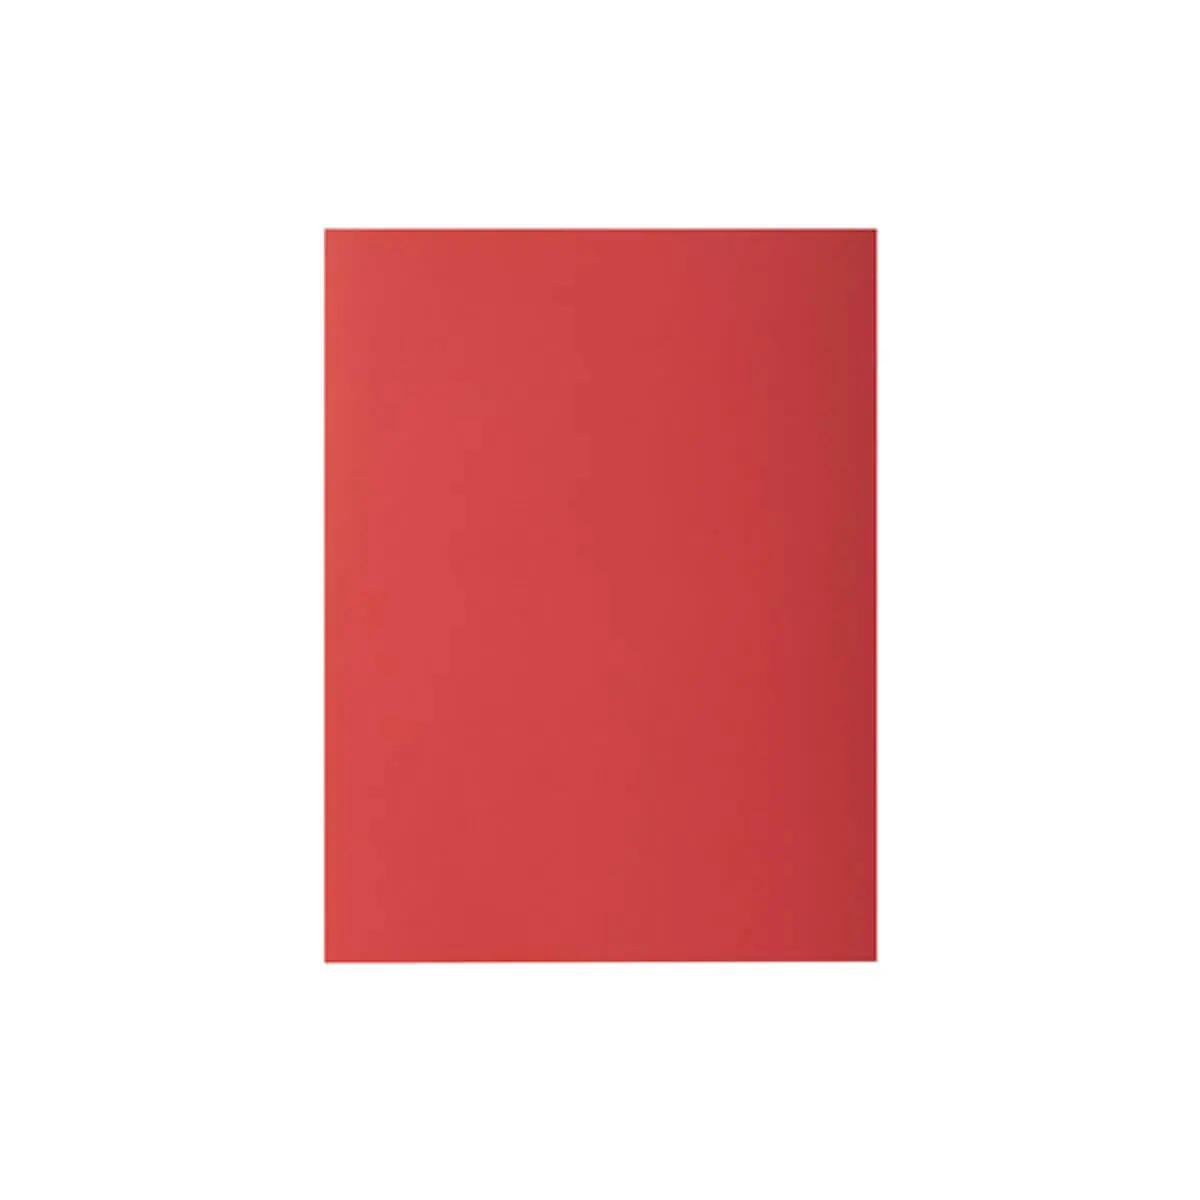 Paquet de 10 chemises ROCK''S 210 - 24x32cm - Rouge - EXACOMPTA photo du produit